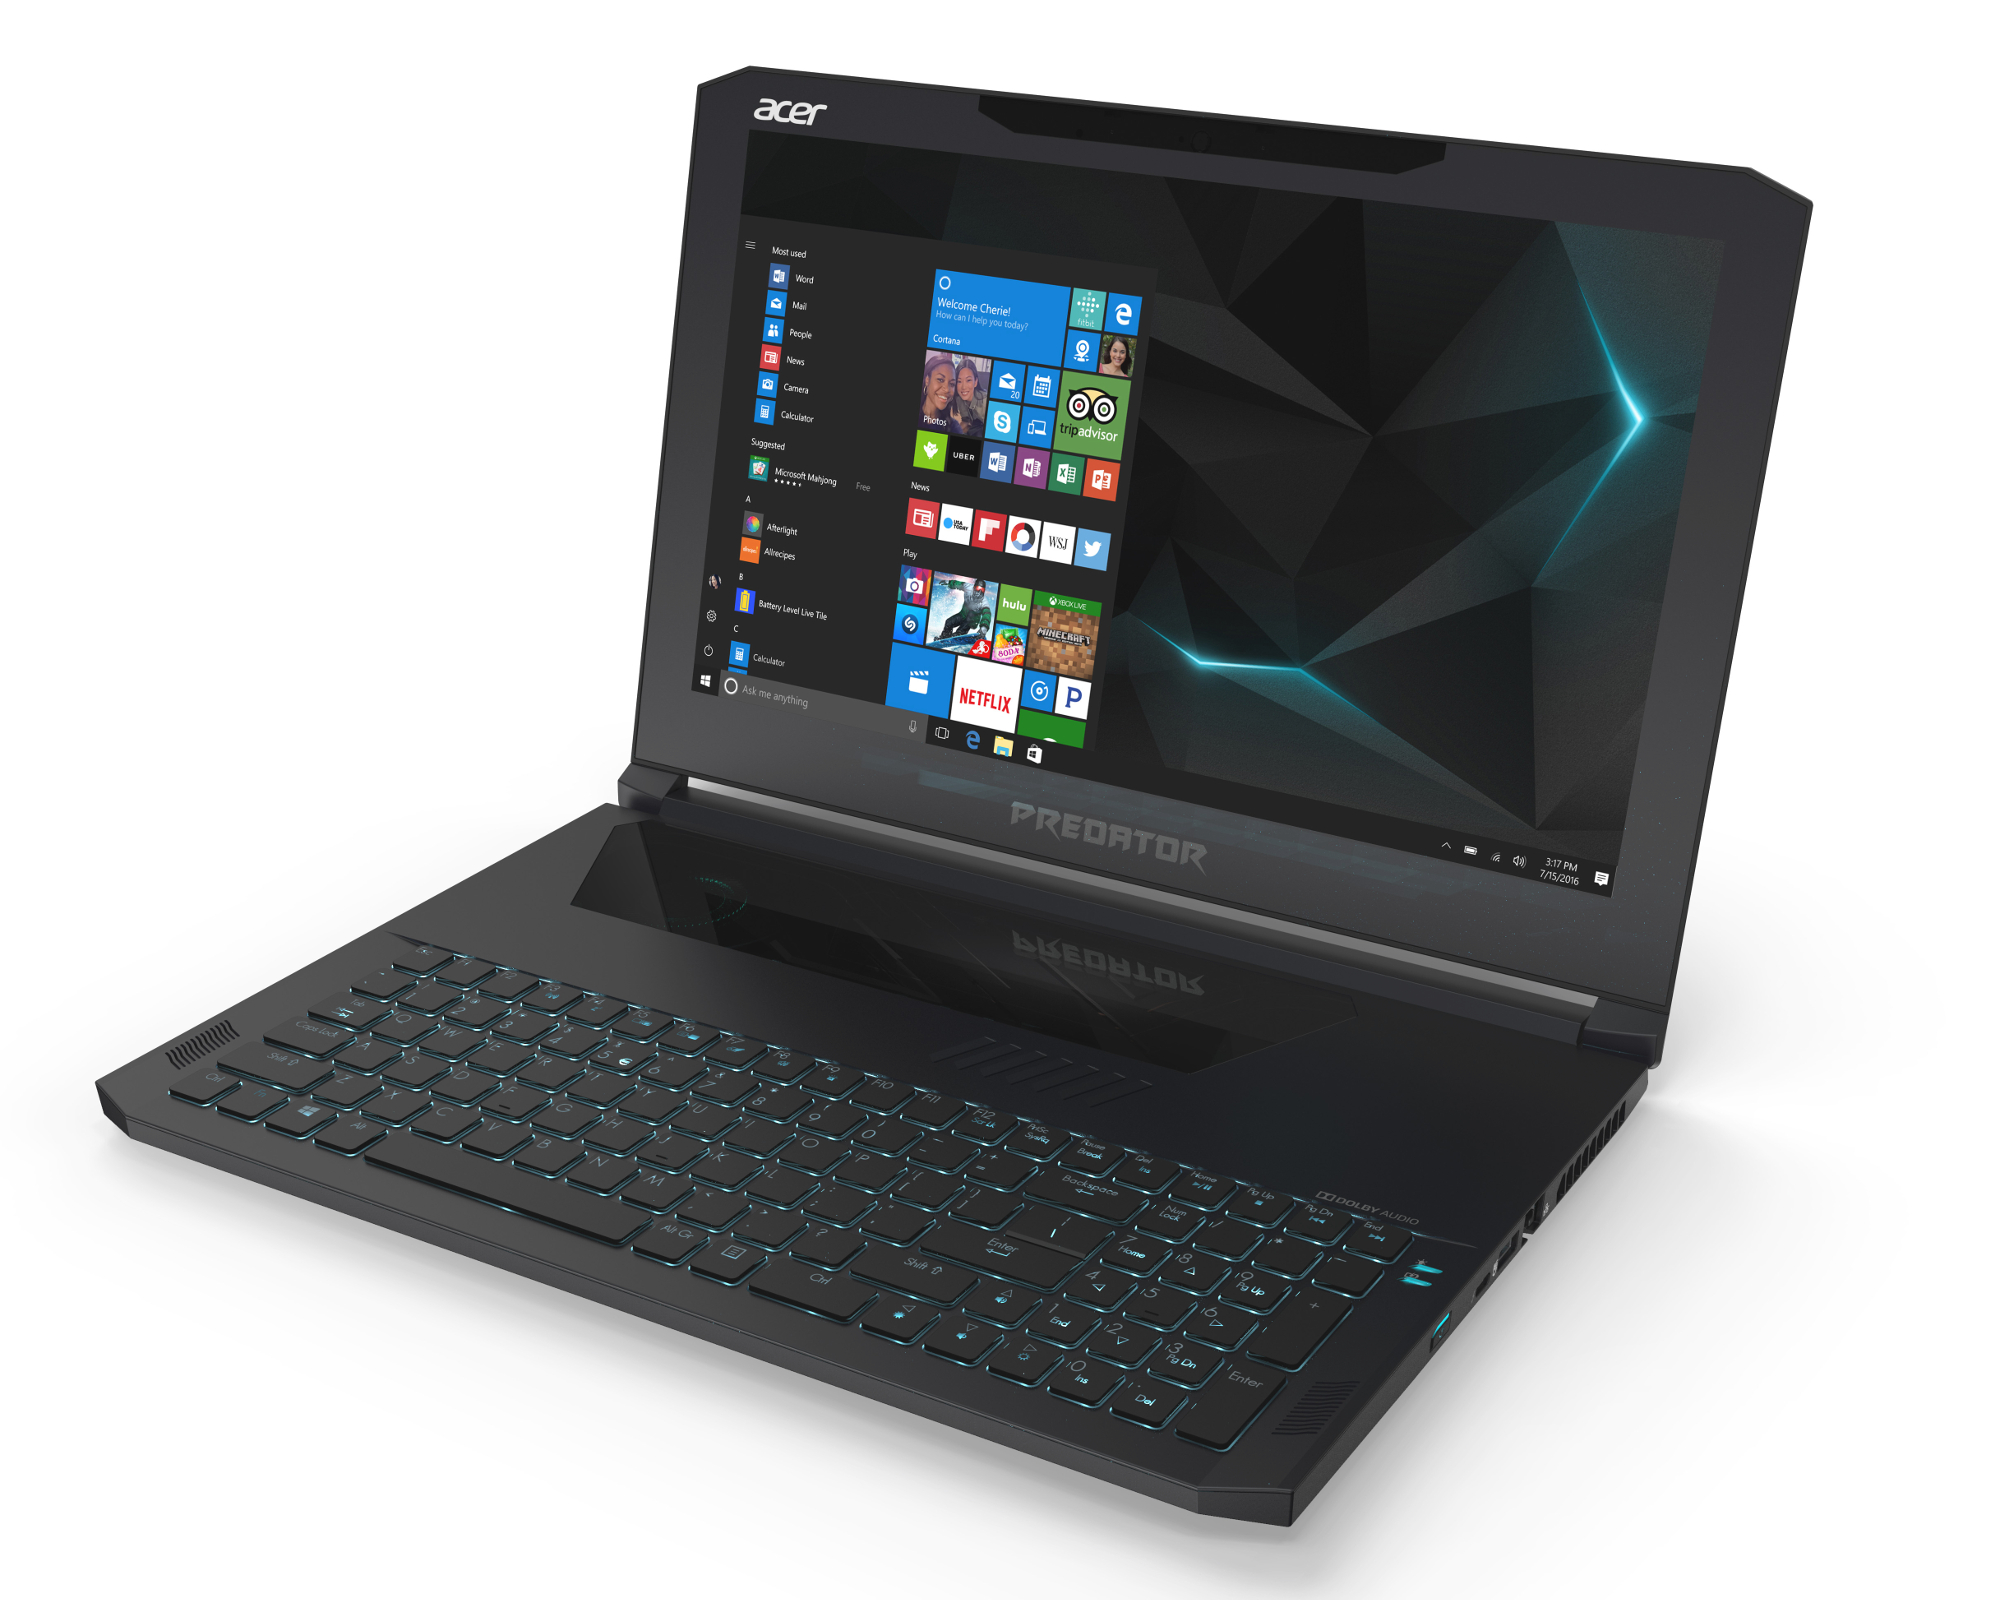 محمول Acer Predator Triton 700 يصمم بتقنية Max-Q بسعر 3000 دولار!